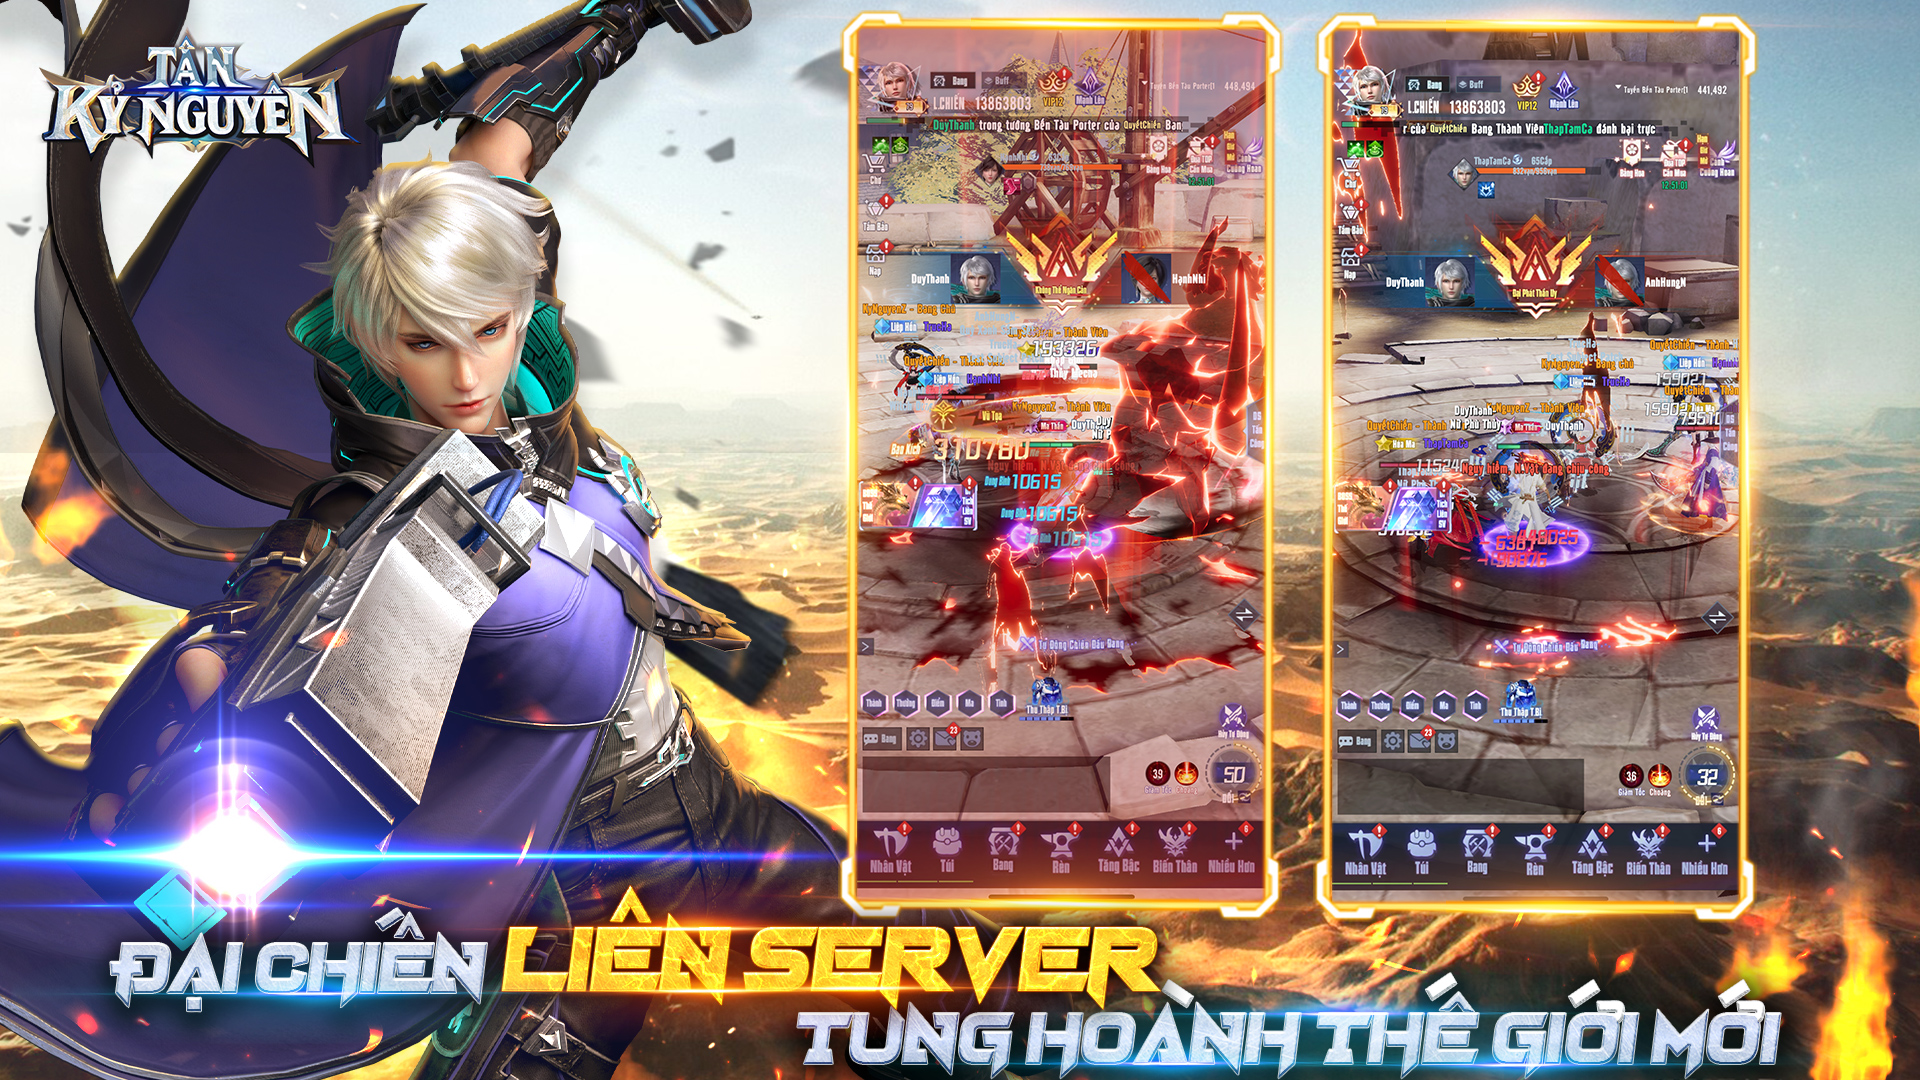 Tân Kỷ Nguyên – Game MMORPG màn hình dọc sắp phát hành tại Việt Nam